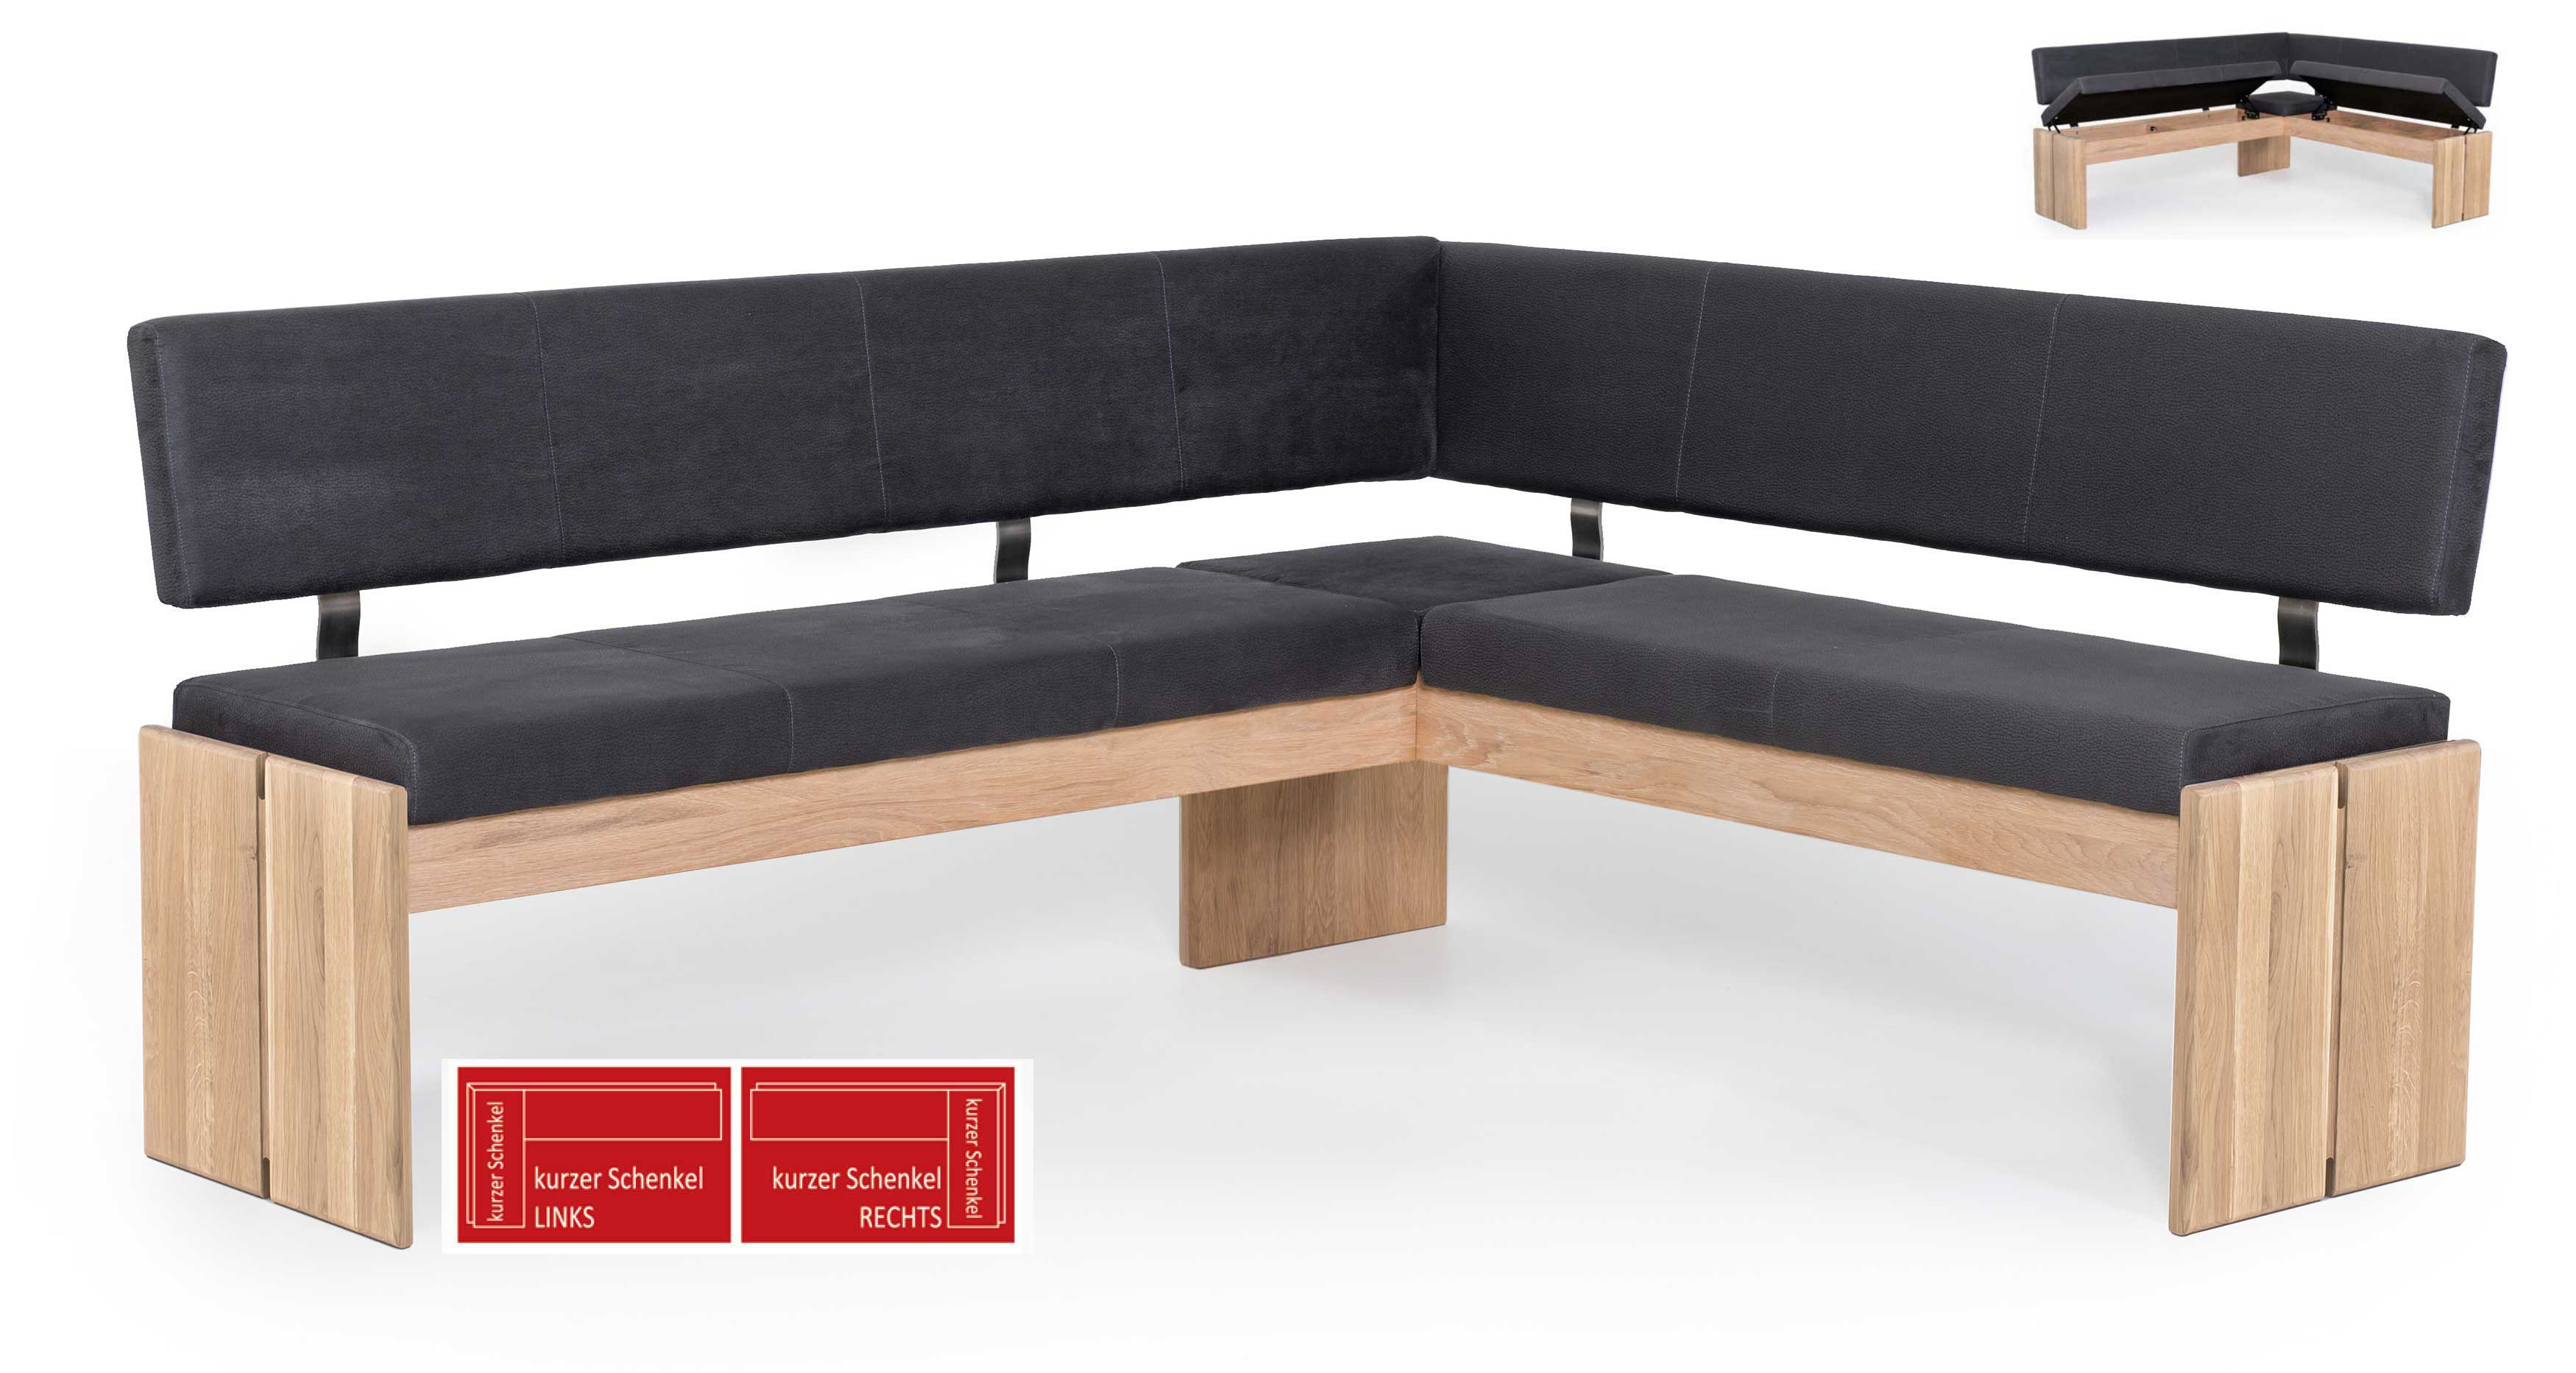 Standard Furniture Stresa Truheneckbank massiv eiche mit Polster